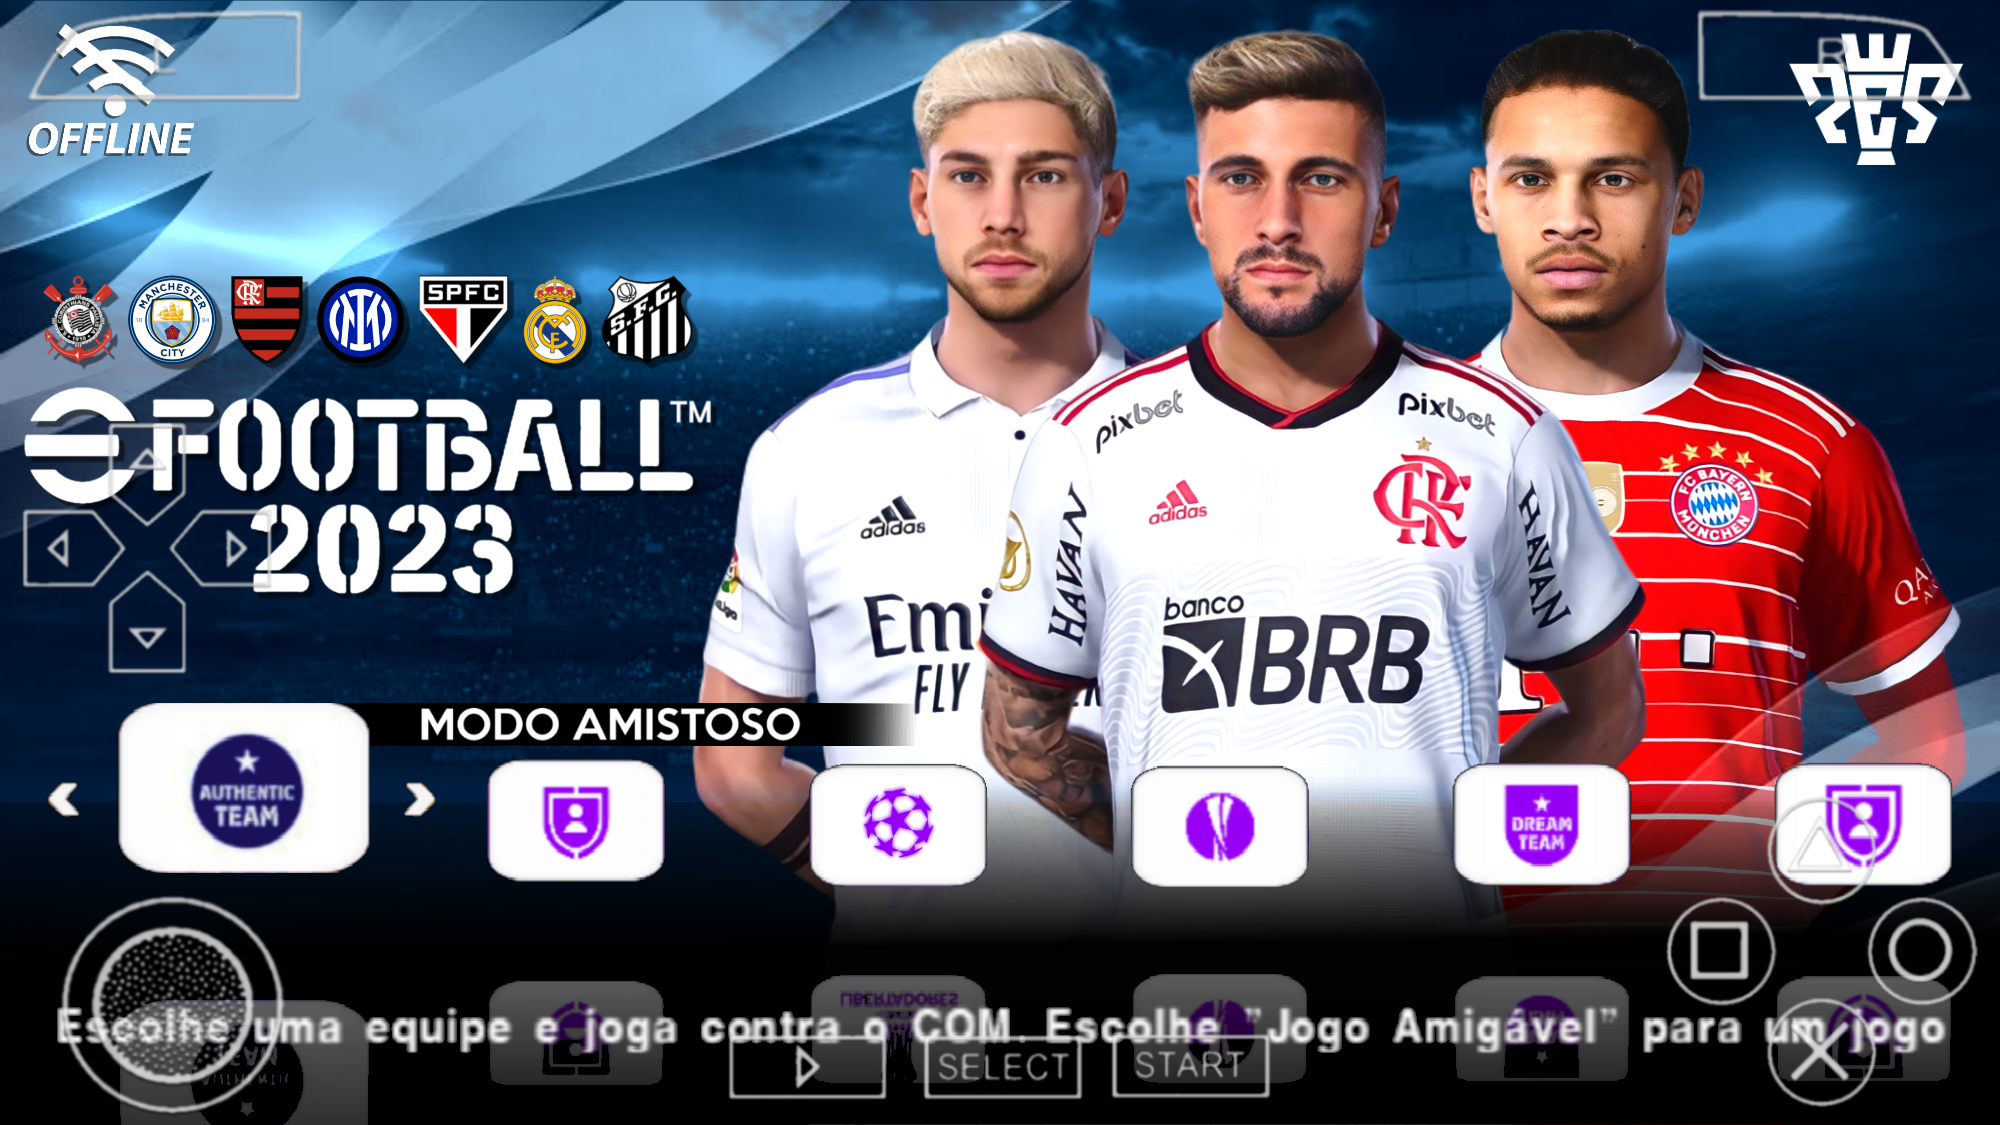 PES Efootball atualizado2022 para ppsspp/psp Android séries A,B,C,D do  Brasil. 